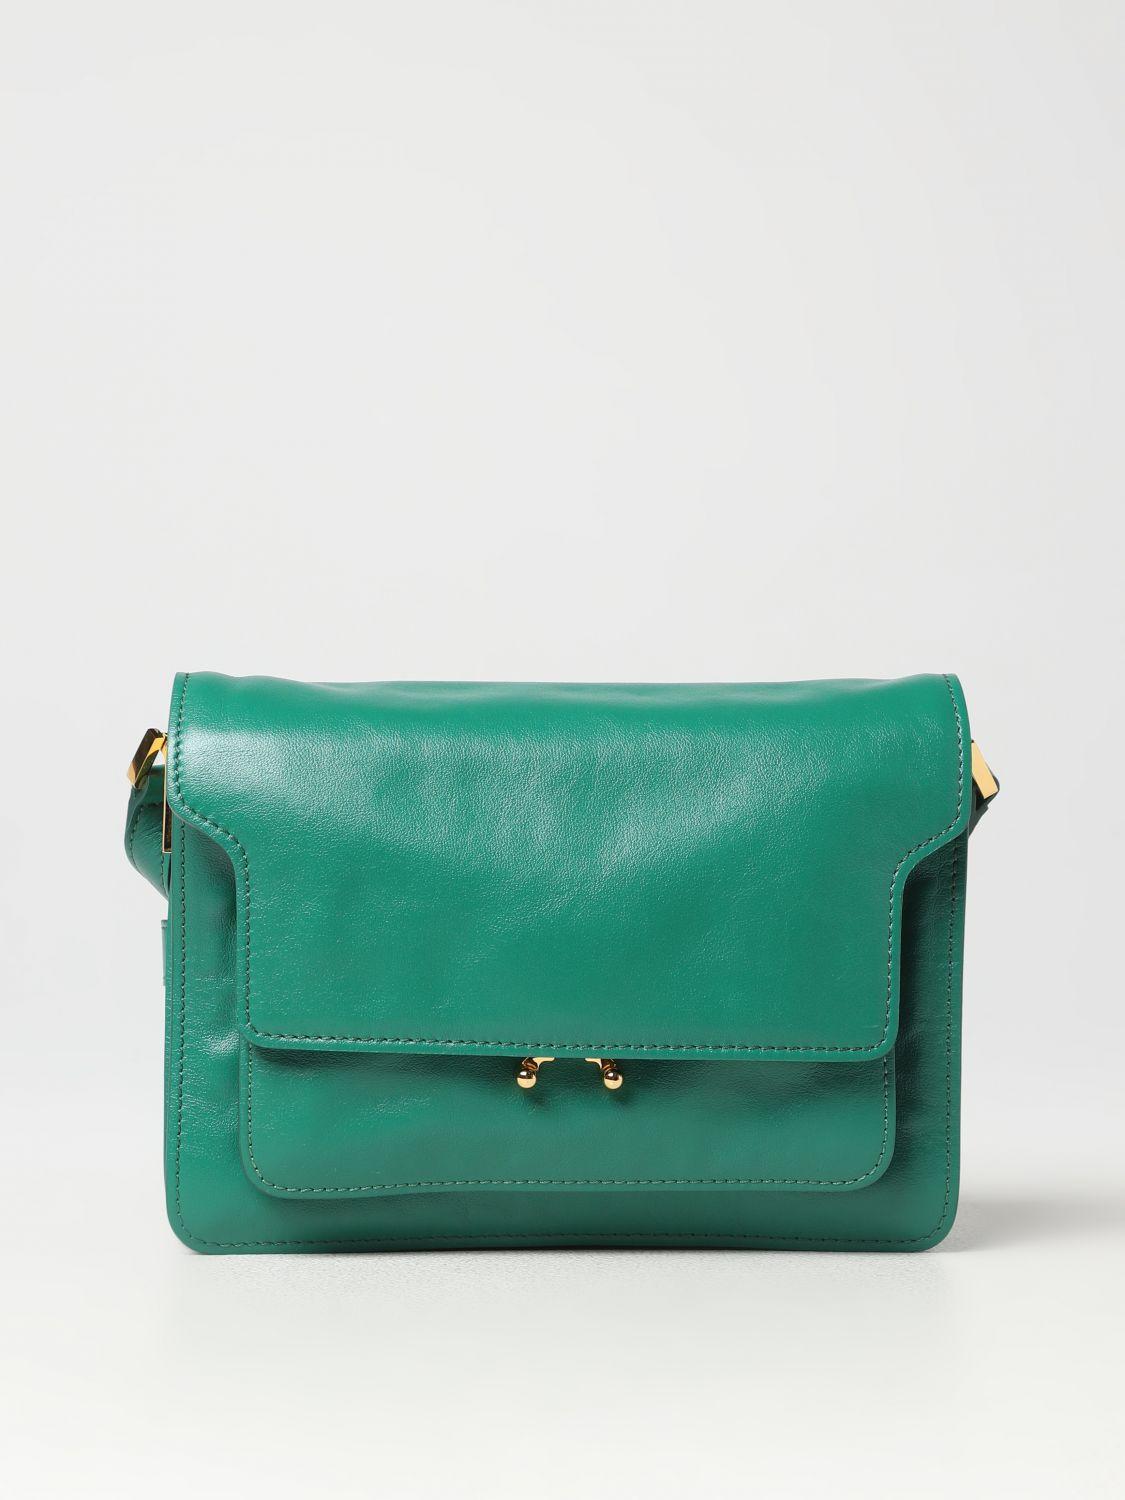 Marni Trunk Mini Shoulder Bag Saffiano Leather Multicolour Green/Black